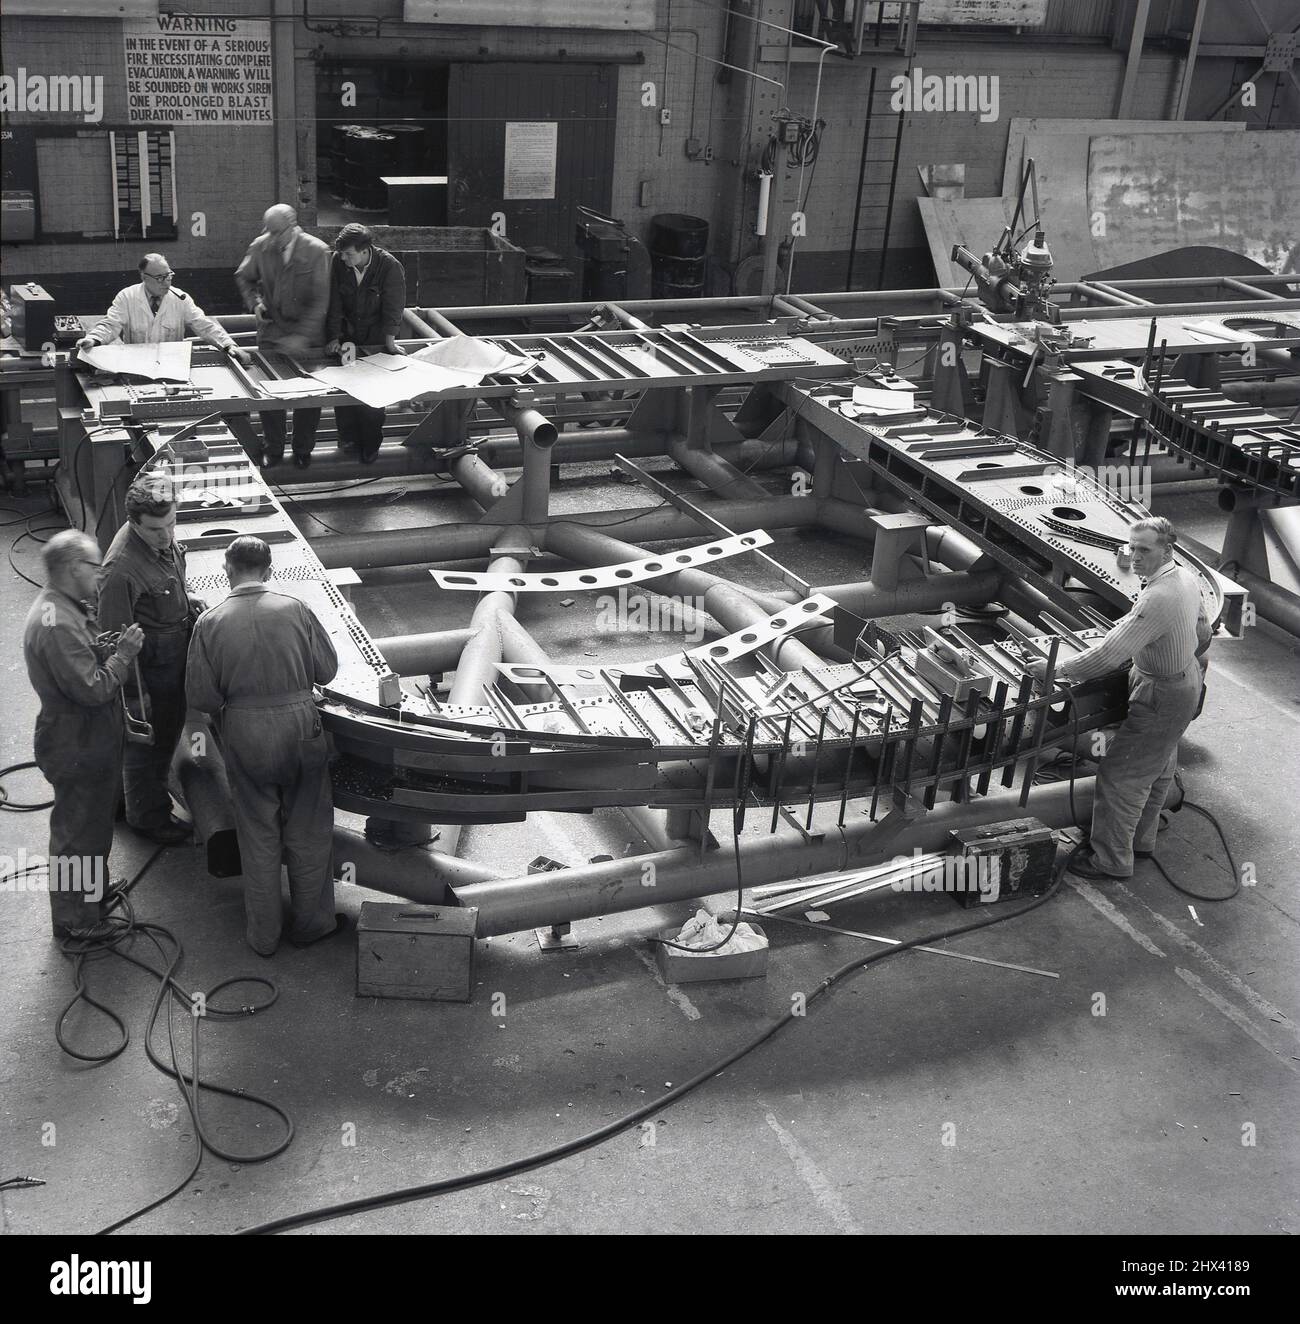 1950s, historique, à l'intérieur d'une usine d'aviation, les travailleurs qui font des pièces pour les avions à Short Bros, Belfast, Irlande du Nord, Royaume-Uni. Banque D'Images